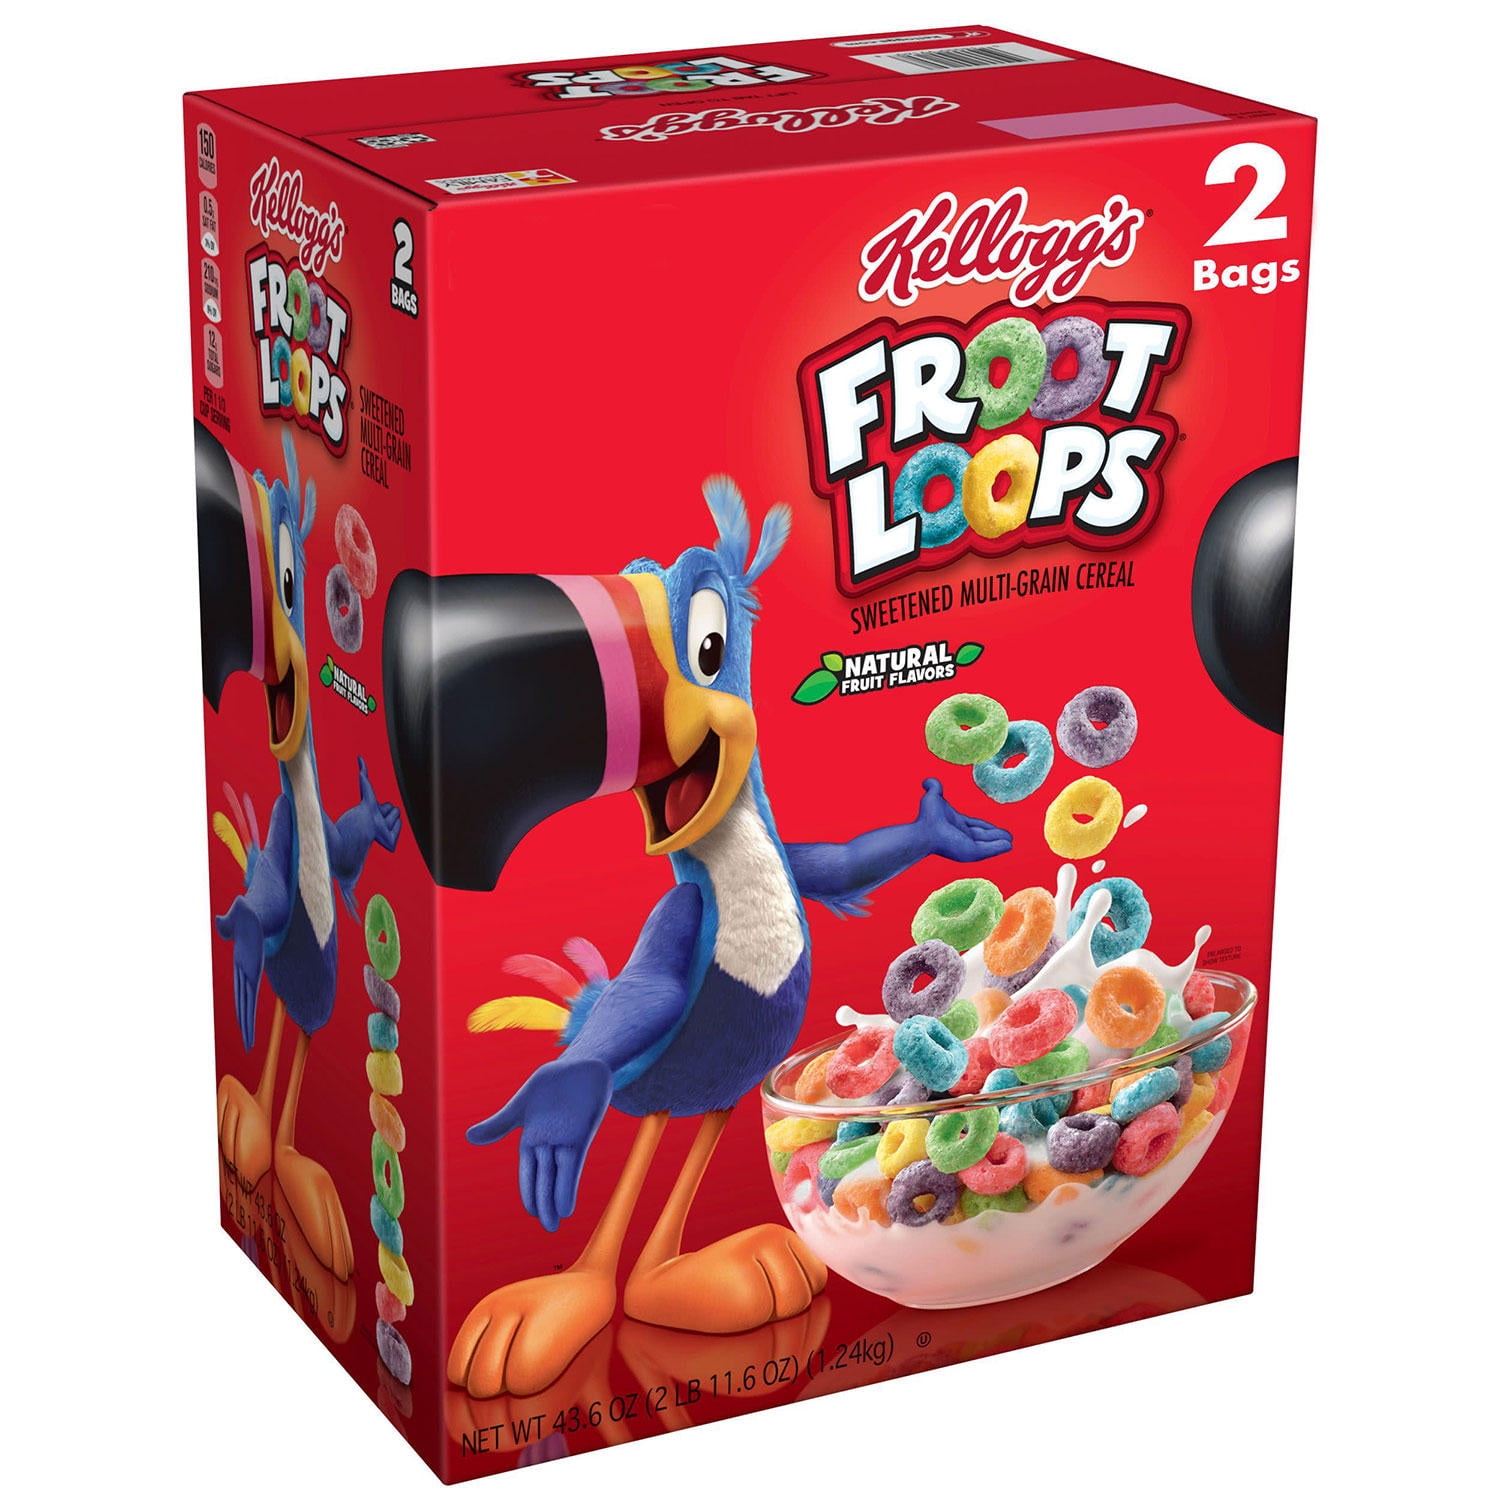 Branded Kellogg's Froot Loops Breakfast Cereal, Assorted Flavor 43.6 oz ...